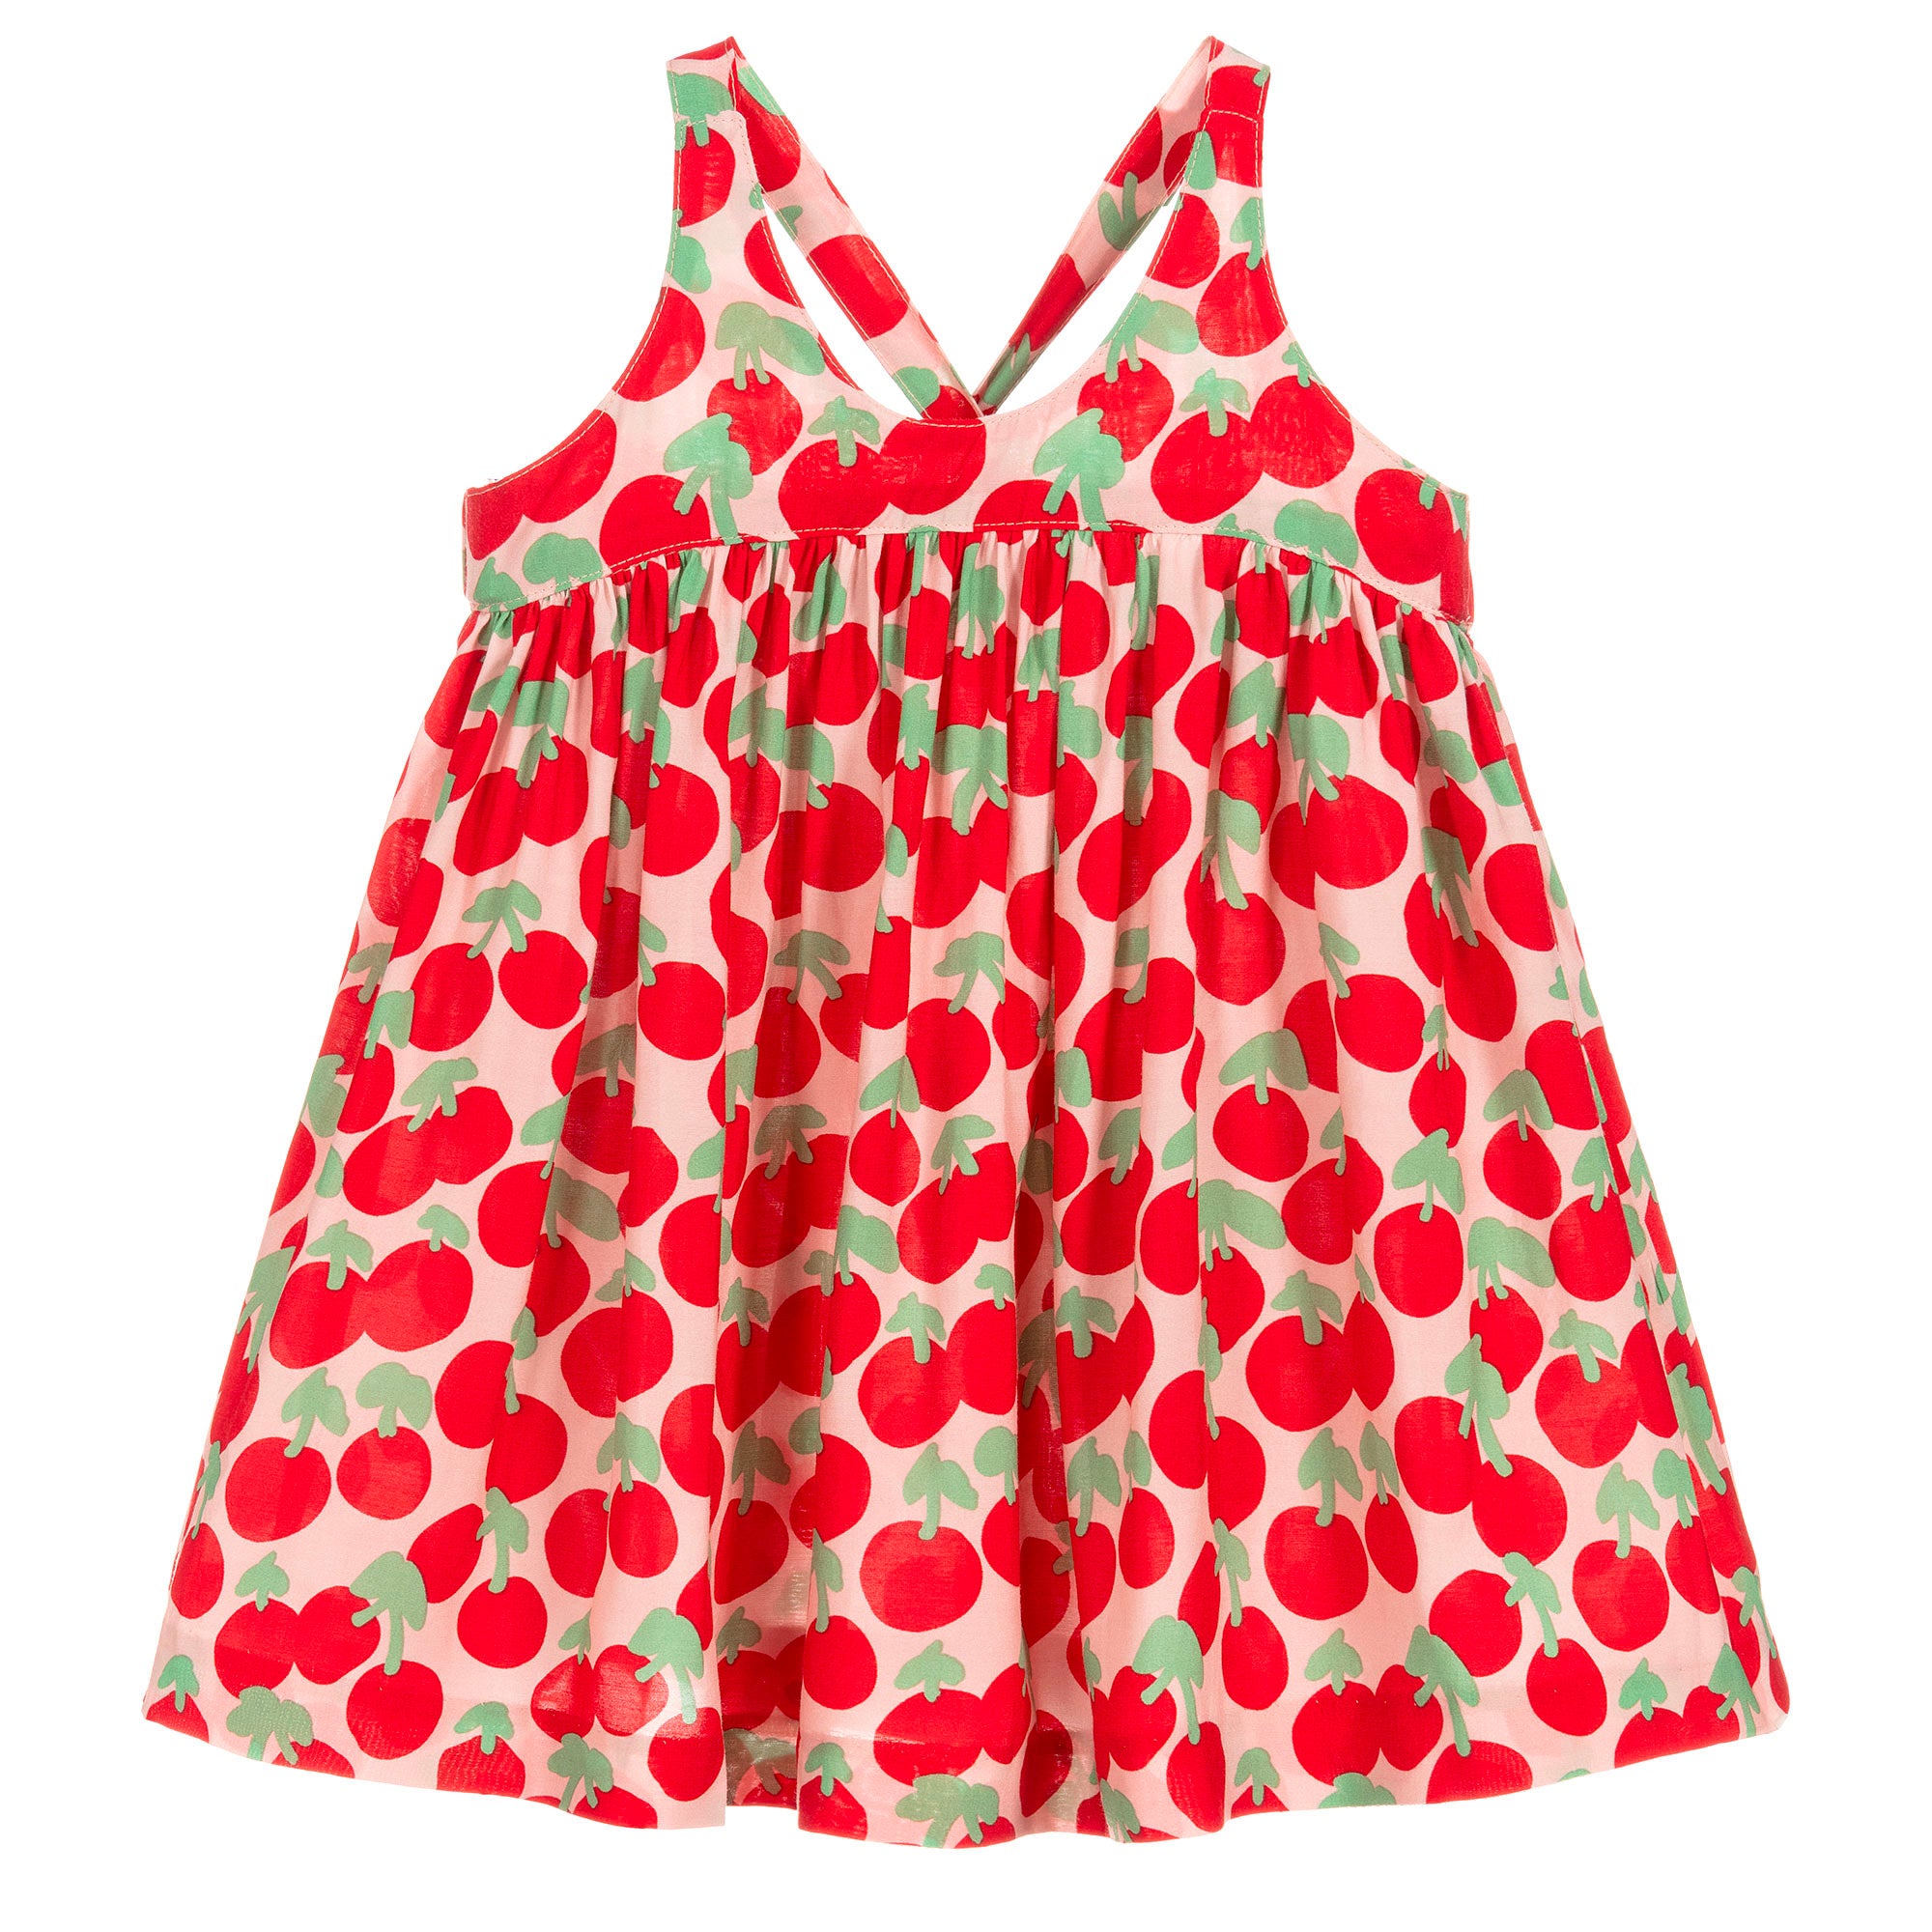 Stella McCartney Kids, Girls & Boys Clothing at Strawberry